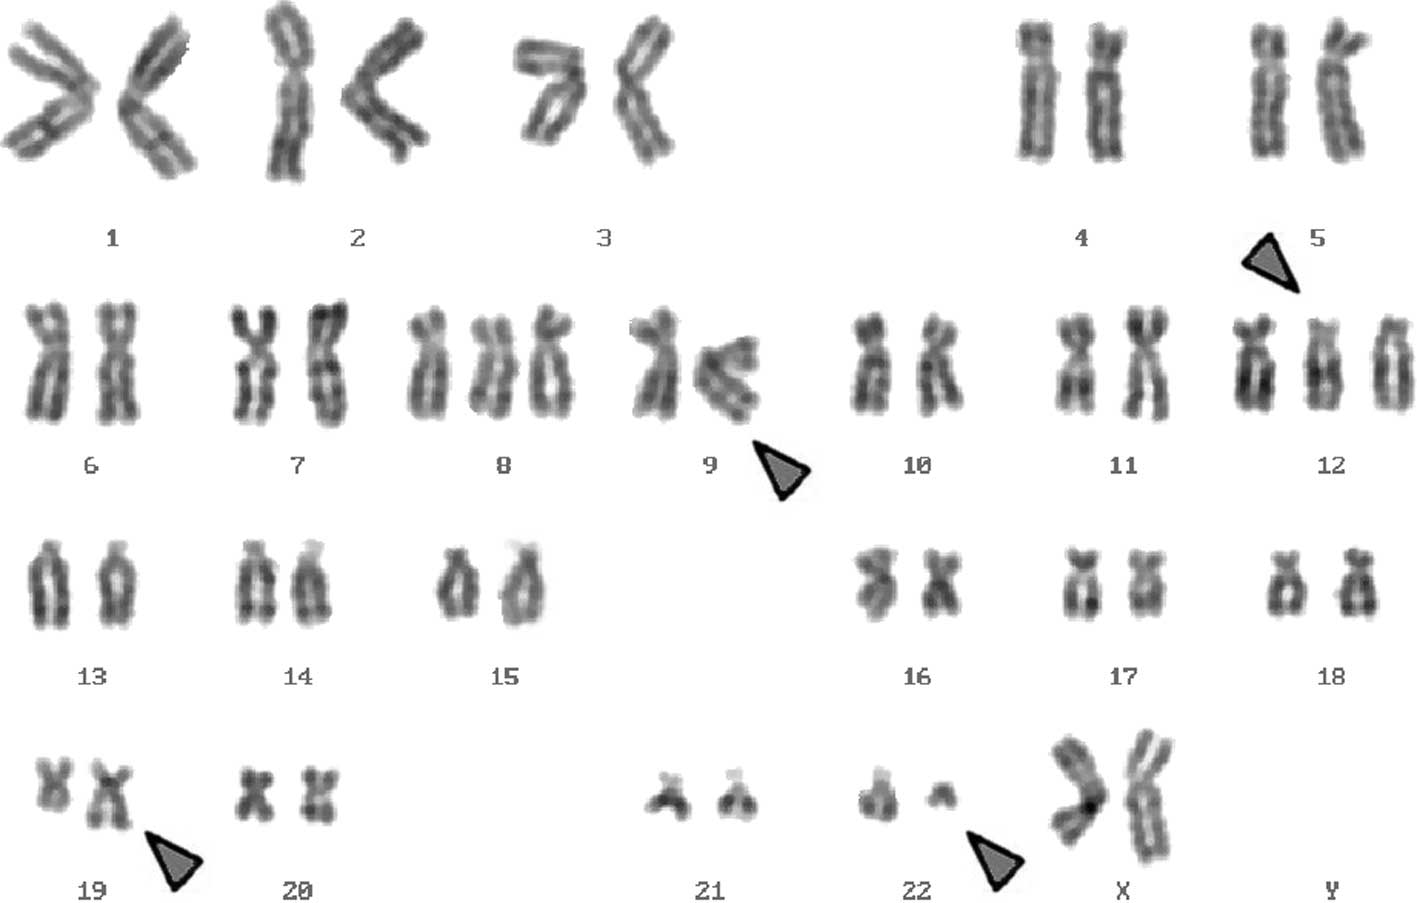 Спаривание хромосом. Филадельфийская хромосома кариотип. Транслокация кариотип. Синдром Клайнфельтера кариотип. Транслокация хромосом кариотип.